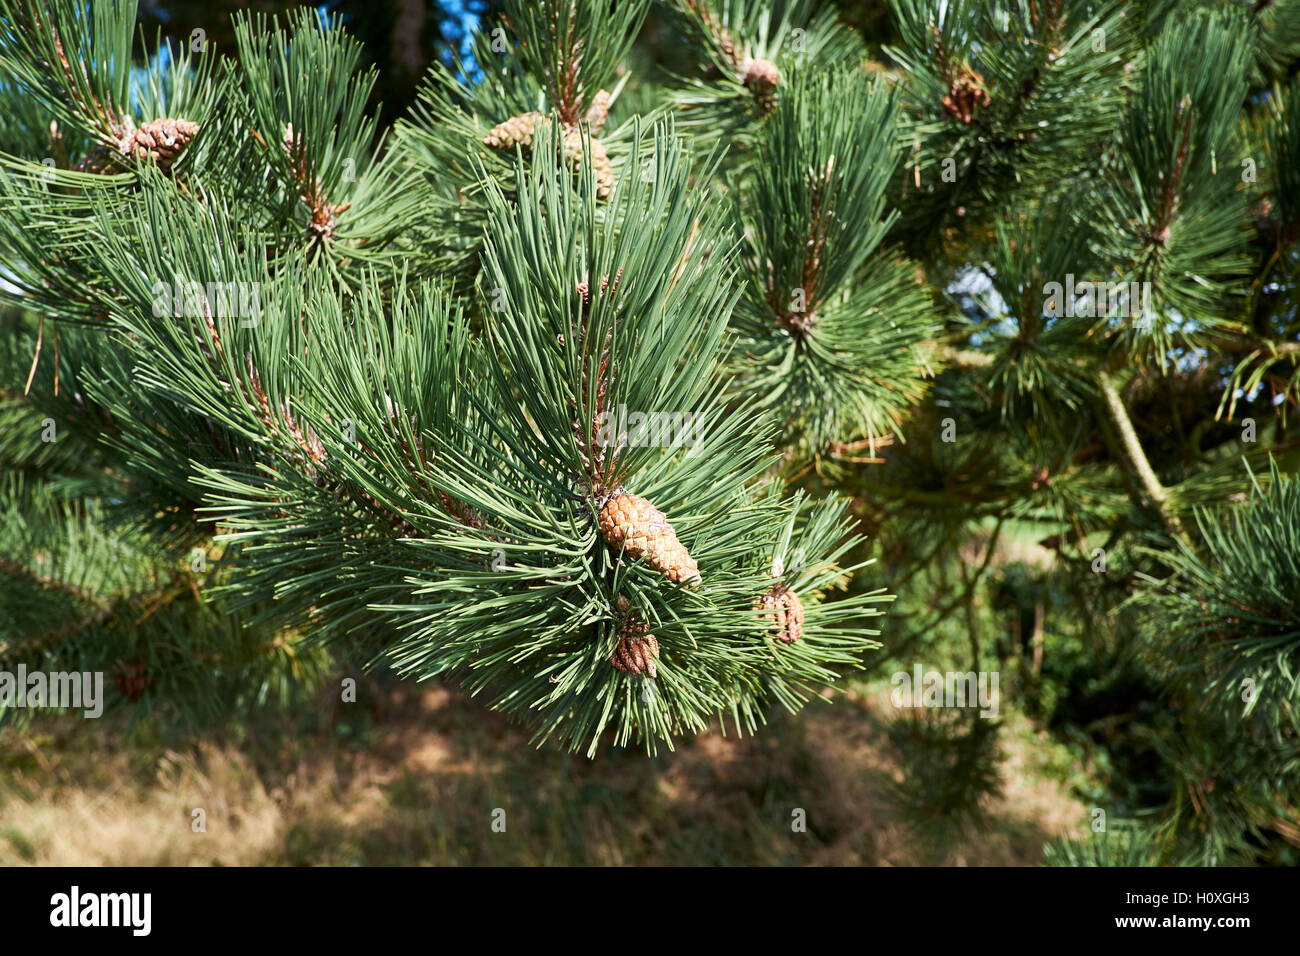 Le pin sylvestre (Pinus sylvestris) arbre avec des pommes de pin, UK. Banque D'Images